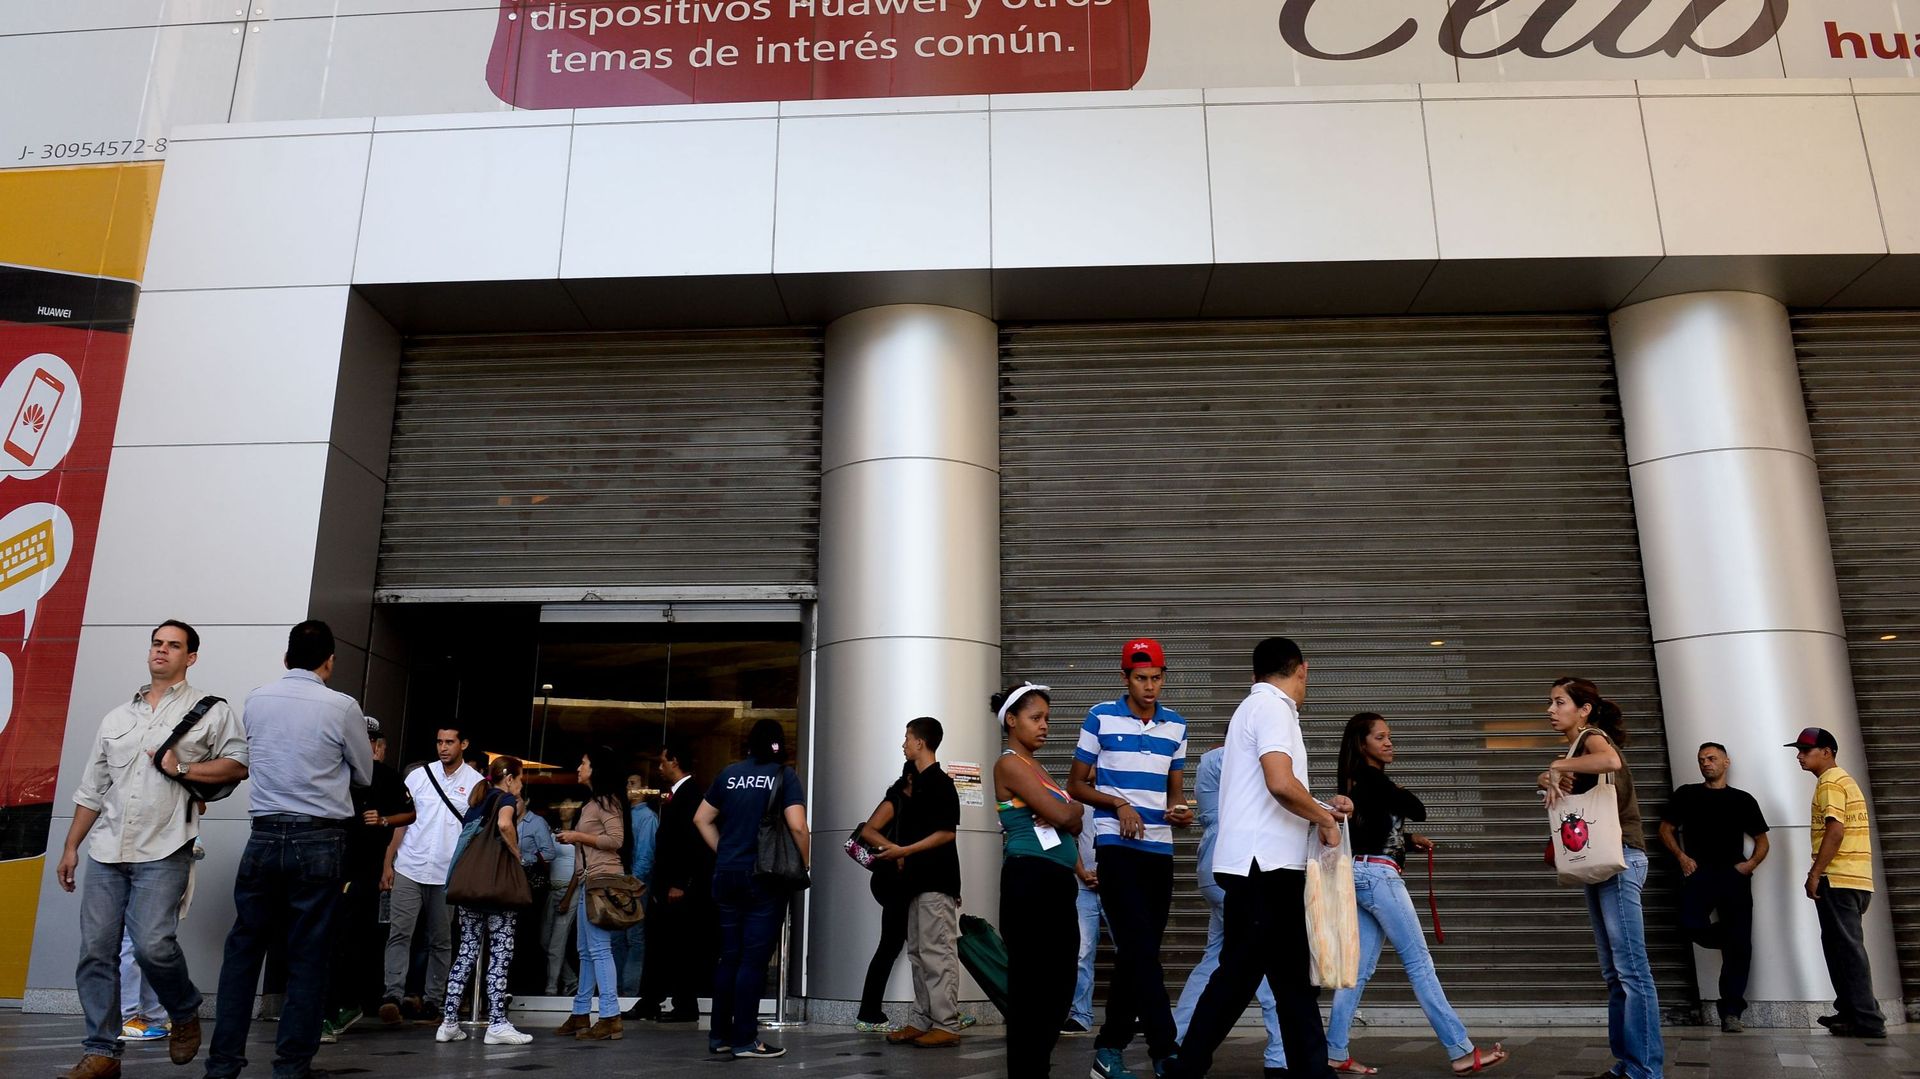 Des habitants de Caracas attendent à l'extérieur d'un centre commercial fermé. Les centres commerciaux doivent réduire leurs horaires d'ouverture suite aux récentes mesures.